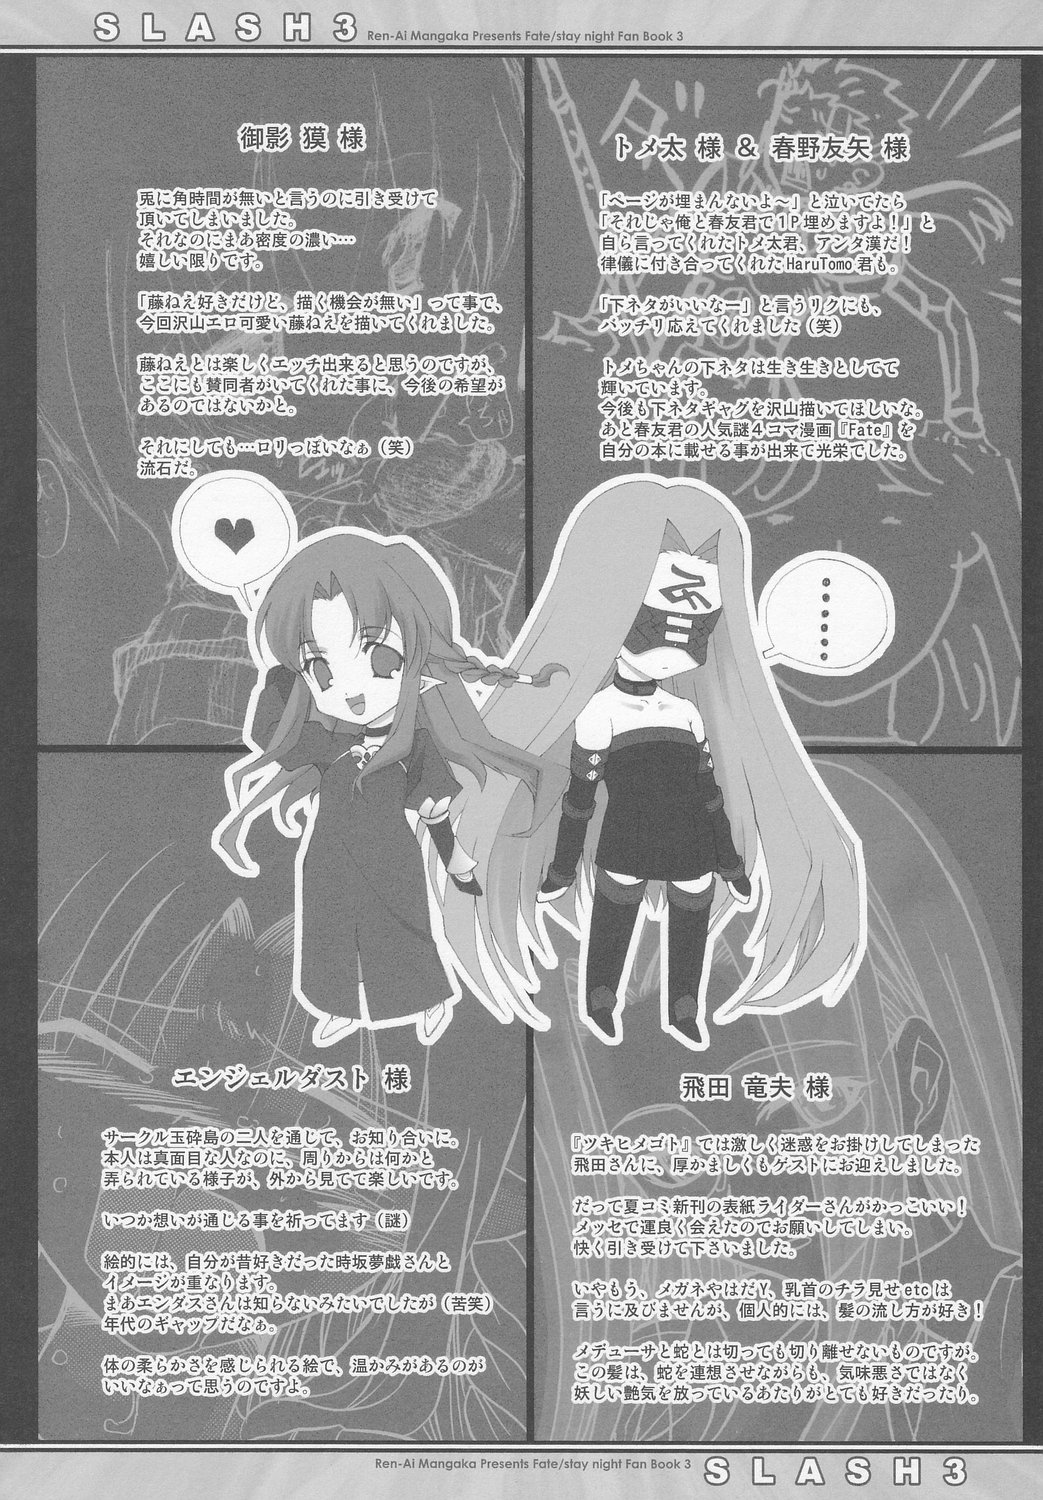 (C66) [Renai Mangaka (Naruse Hirofumi)] SLASH 3 (Fate/stay night) page 33 full